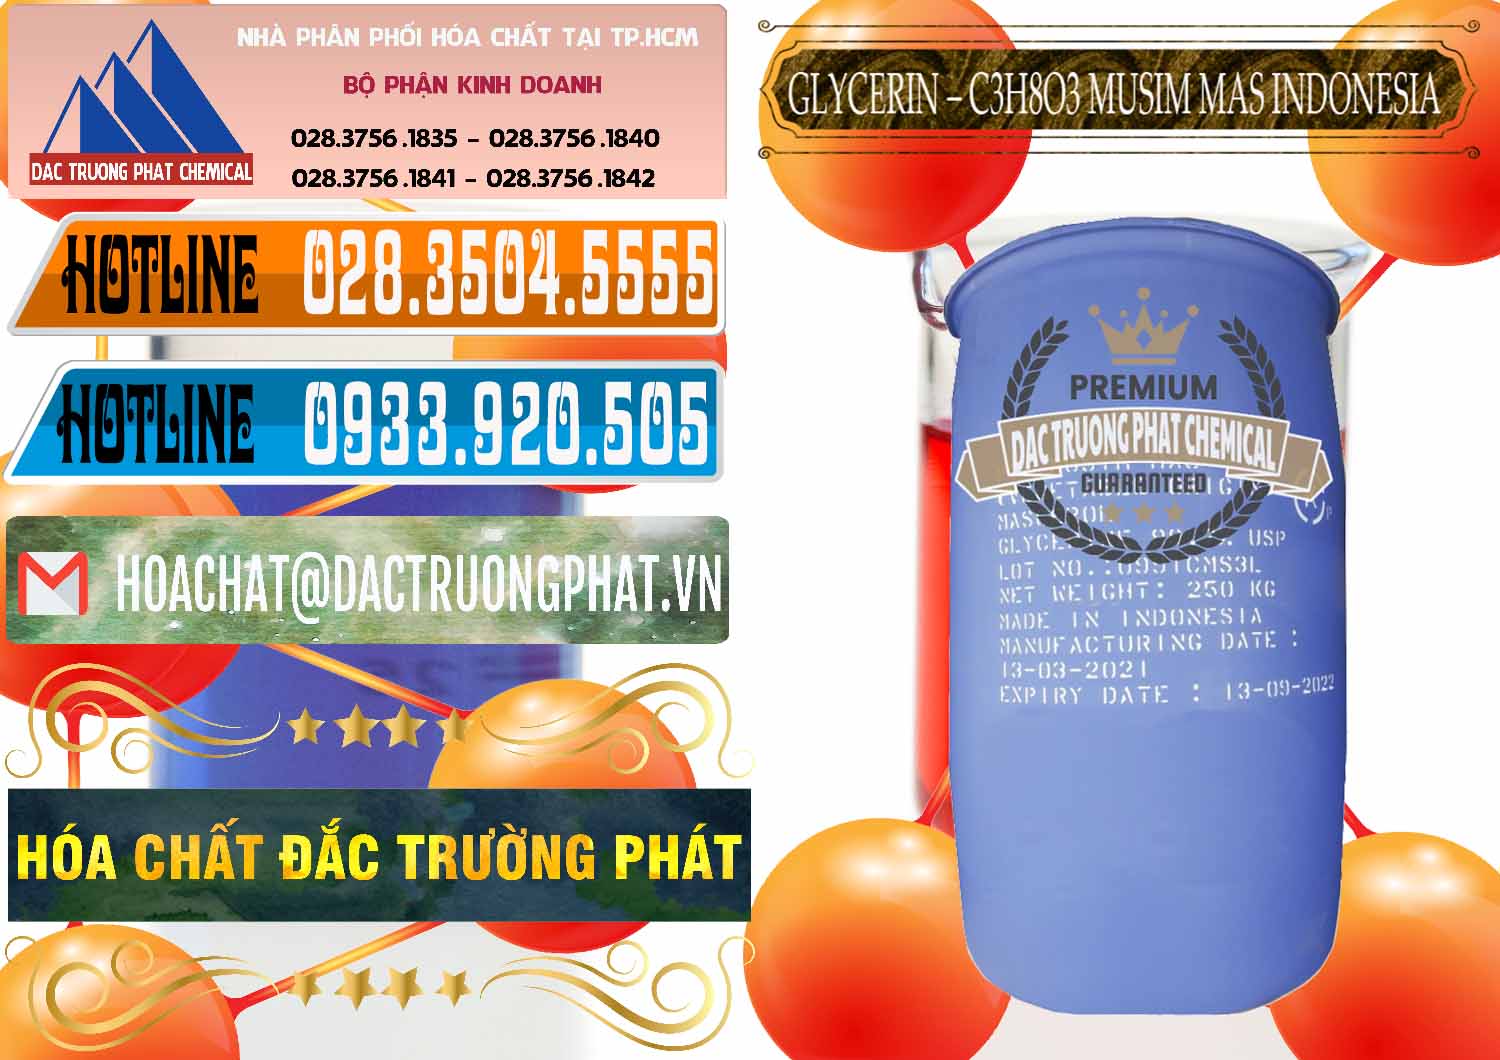 Đơn vị chuyên bán & cung cấp Glycerin – C3H8O3 99.7% Musim Mas Indonesia - 0272 - Cty chuyên cung ứng _ phân phối hóa chất tại TP.HCM - stmp.net